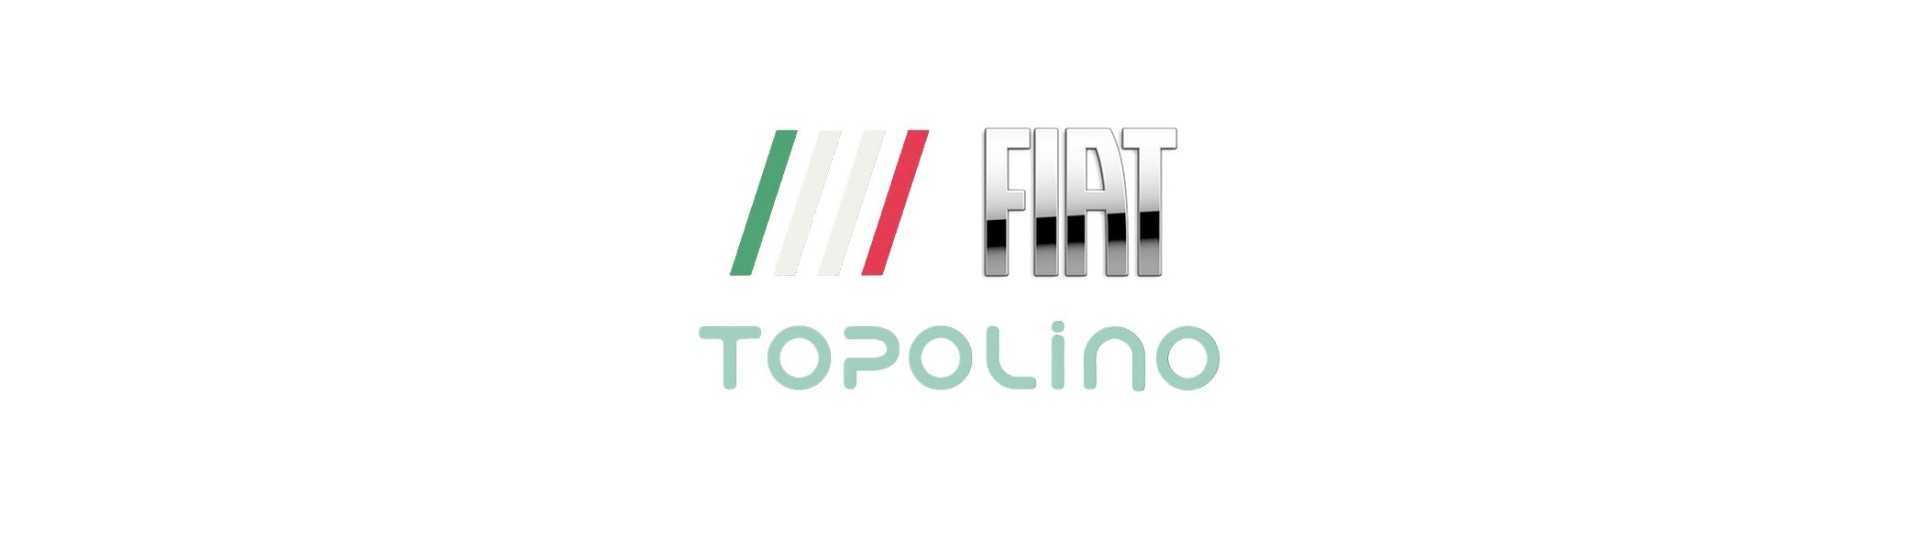 Joint lèche vitre pour voiture sans permis Fiat Topolino